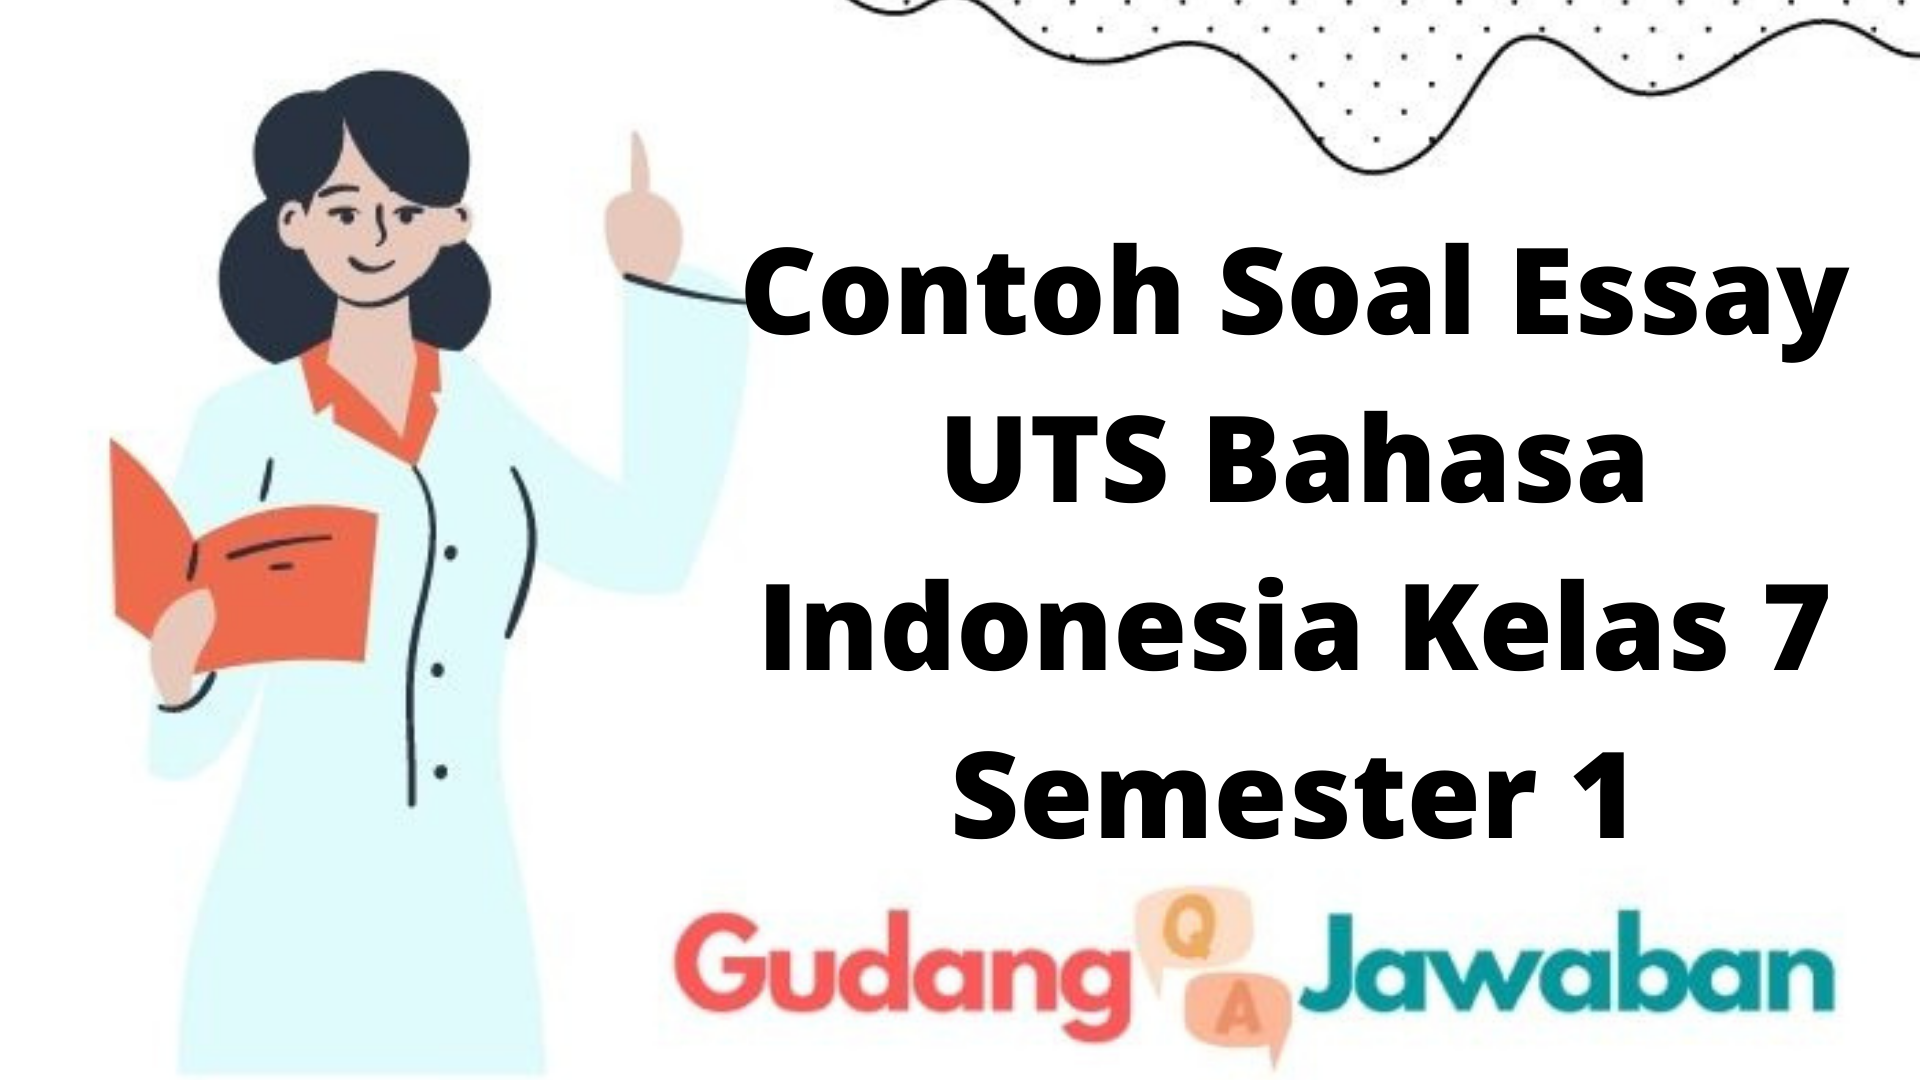 Contoh Soal Essay UTS Bahasa Indonesia Kelas 7 Semester 1